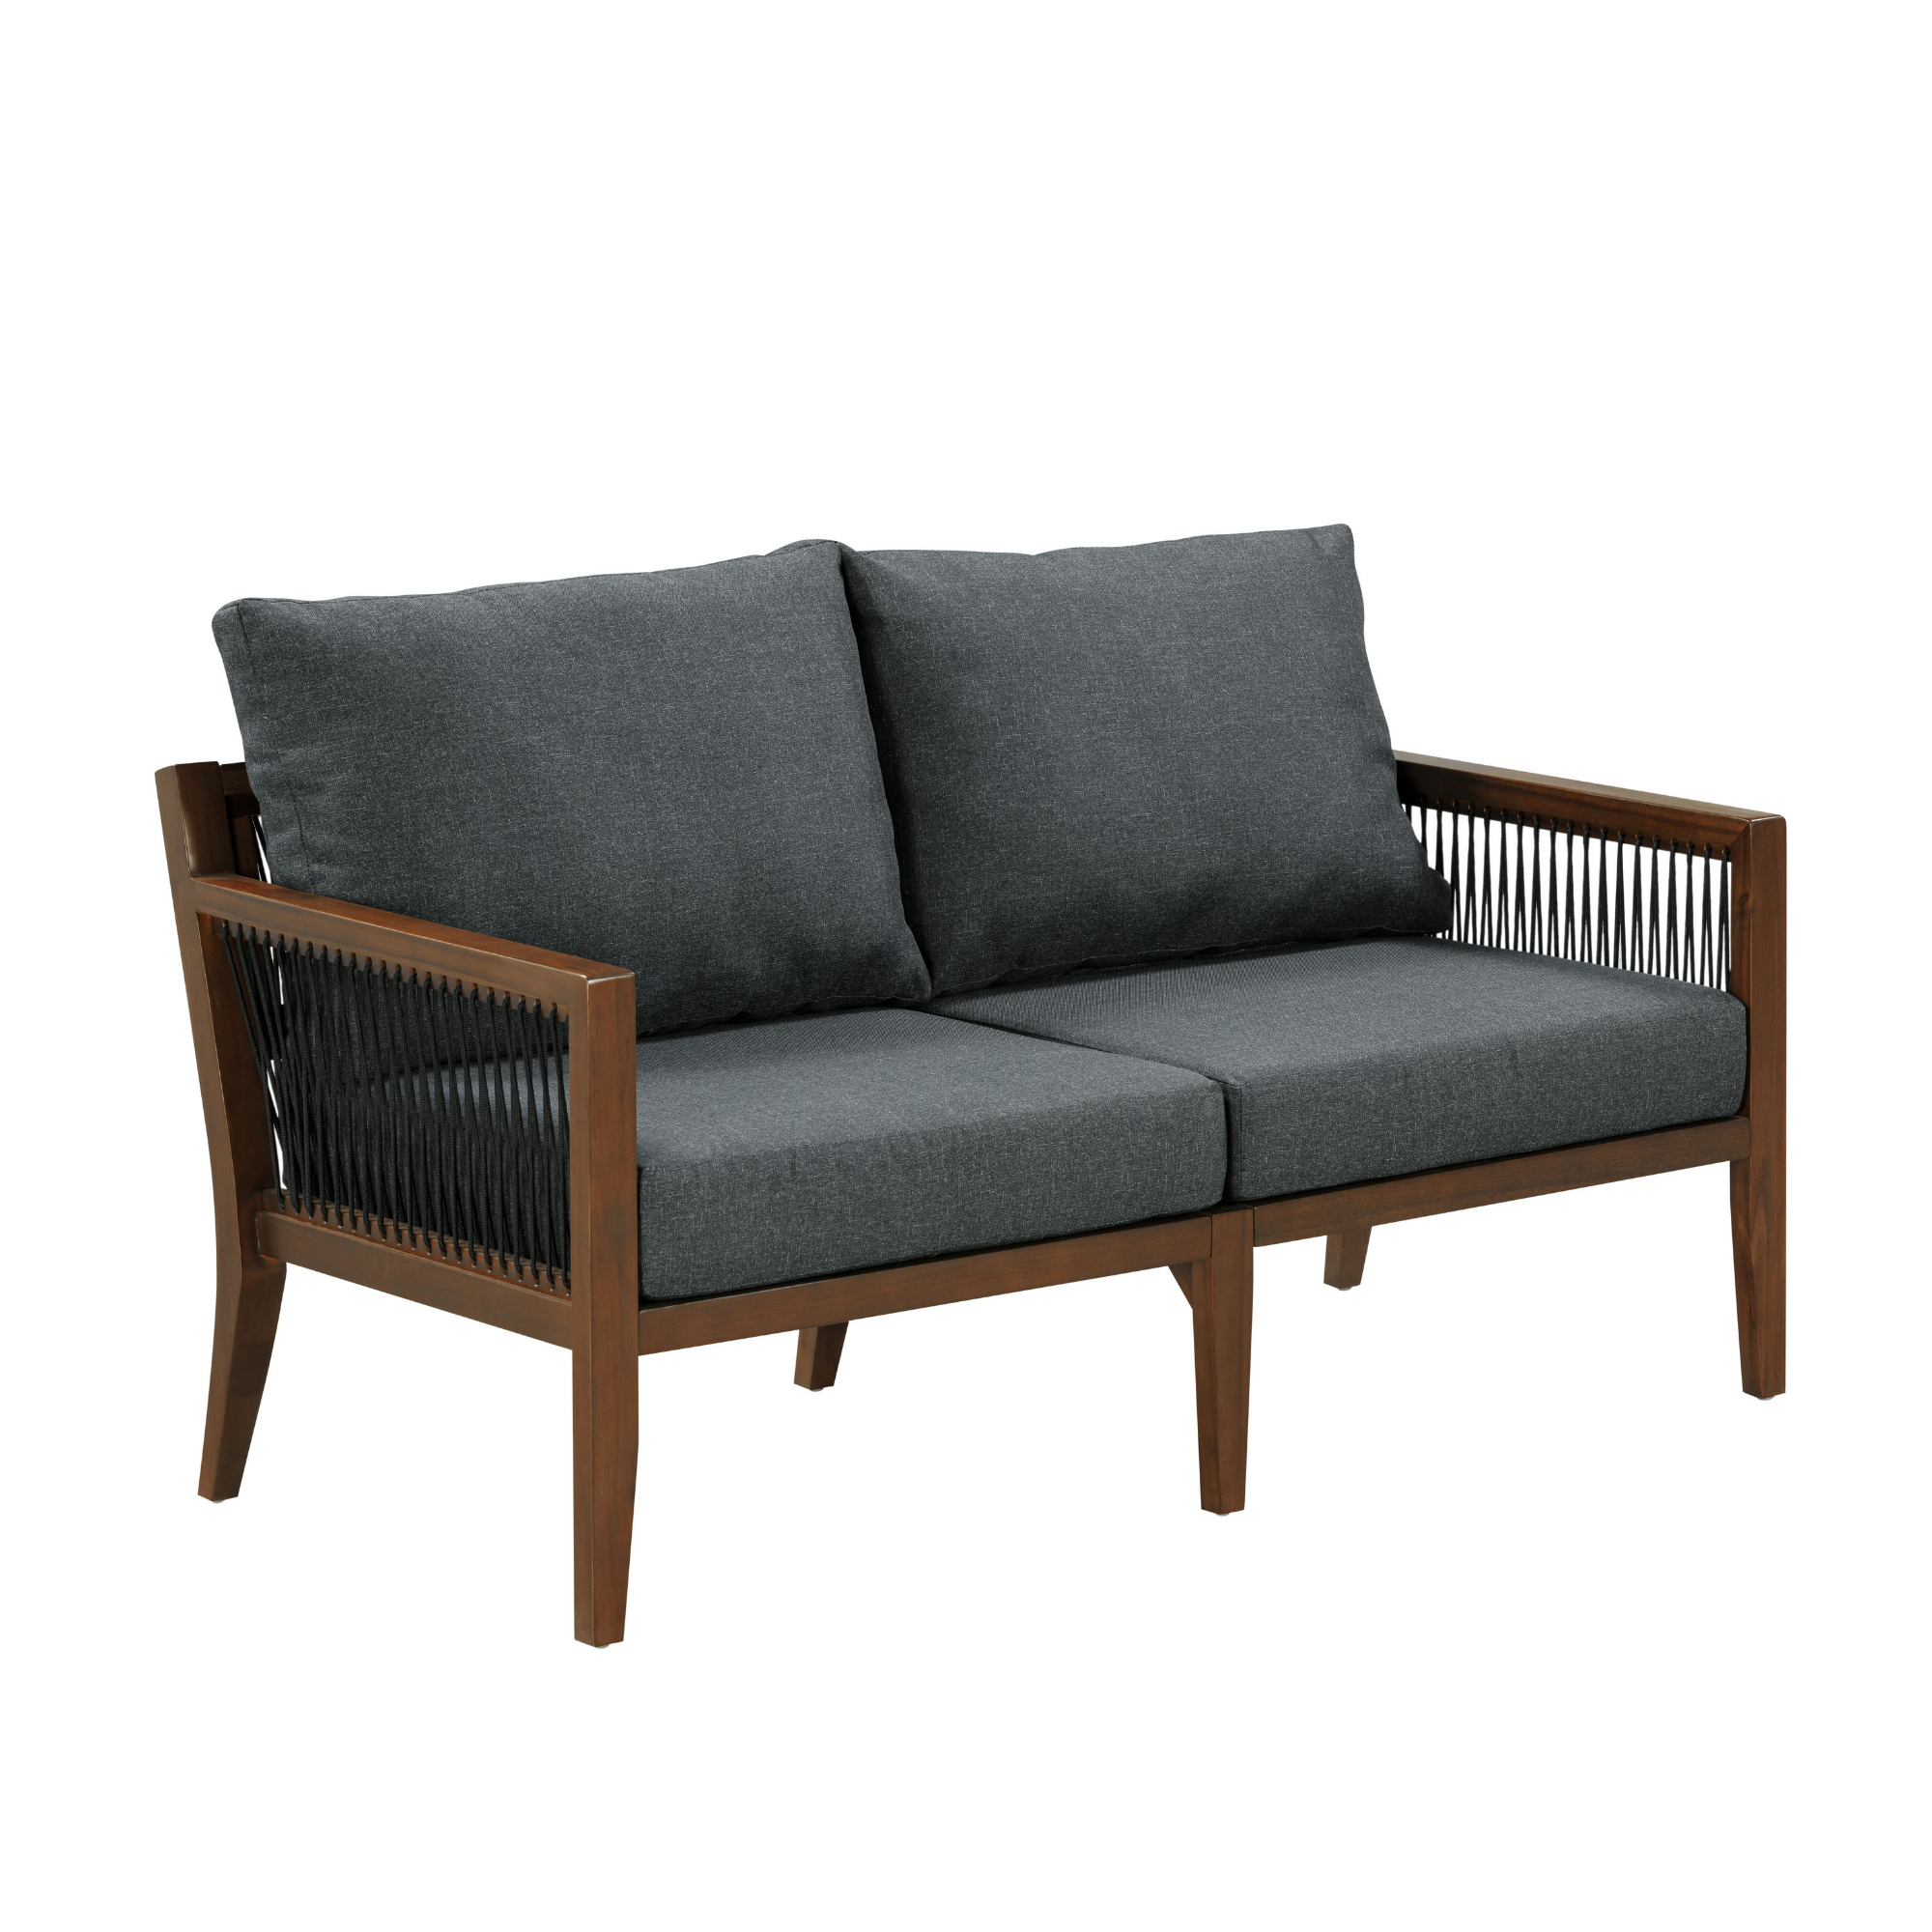 Outdoor Wood Patio Couch Gray Dark Acacia